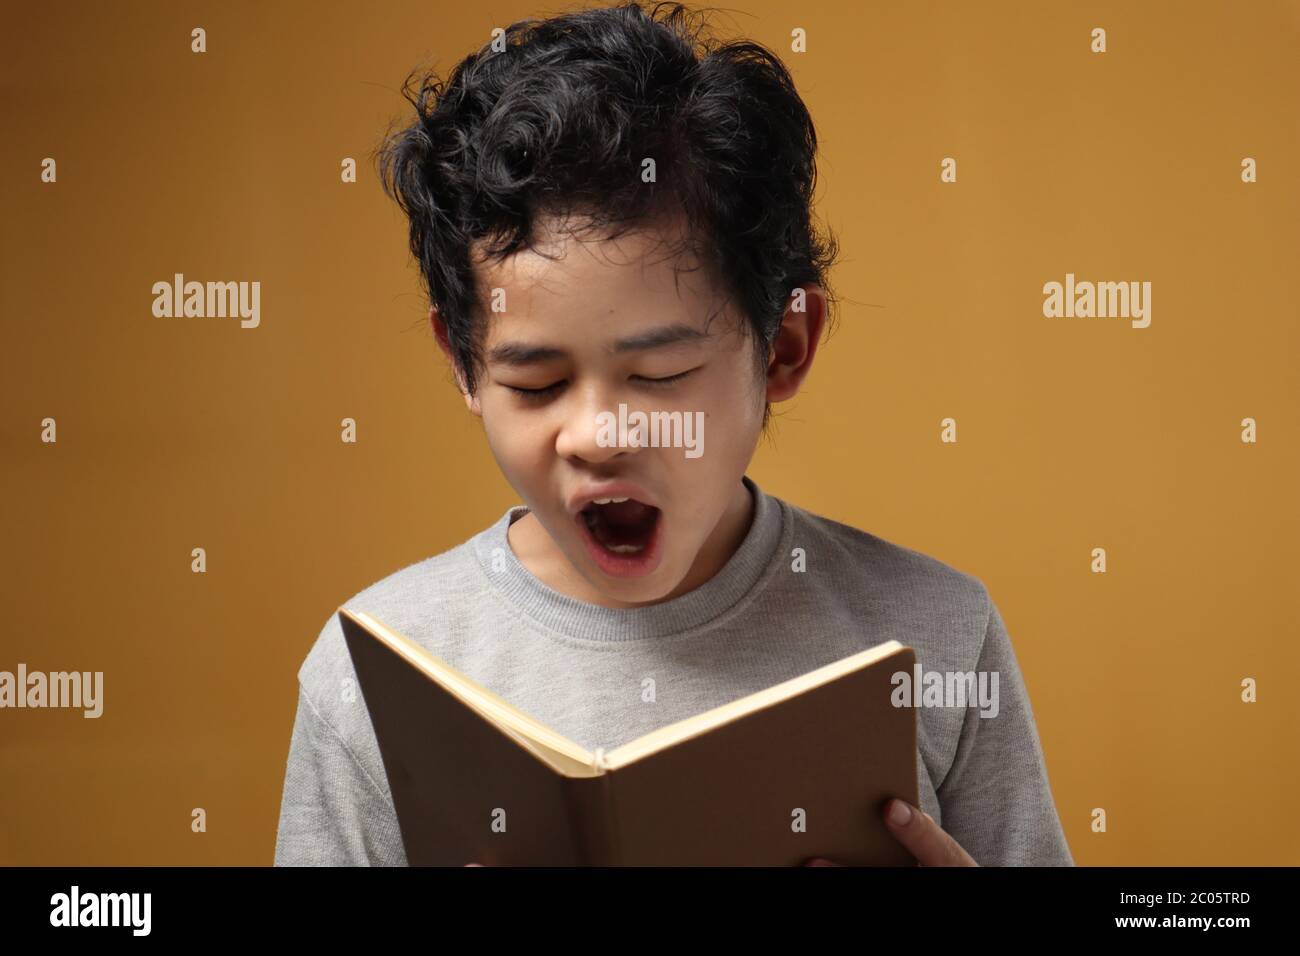 Ritratto di giovane studente asiatico ragazzo stanco sonnolento e sbadigli durante la lettura di un libro, studente stanco quando studia duro, su sfondo giallo Foto Stock